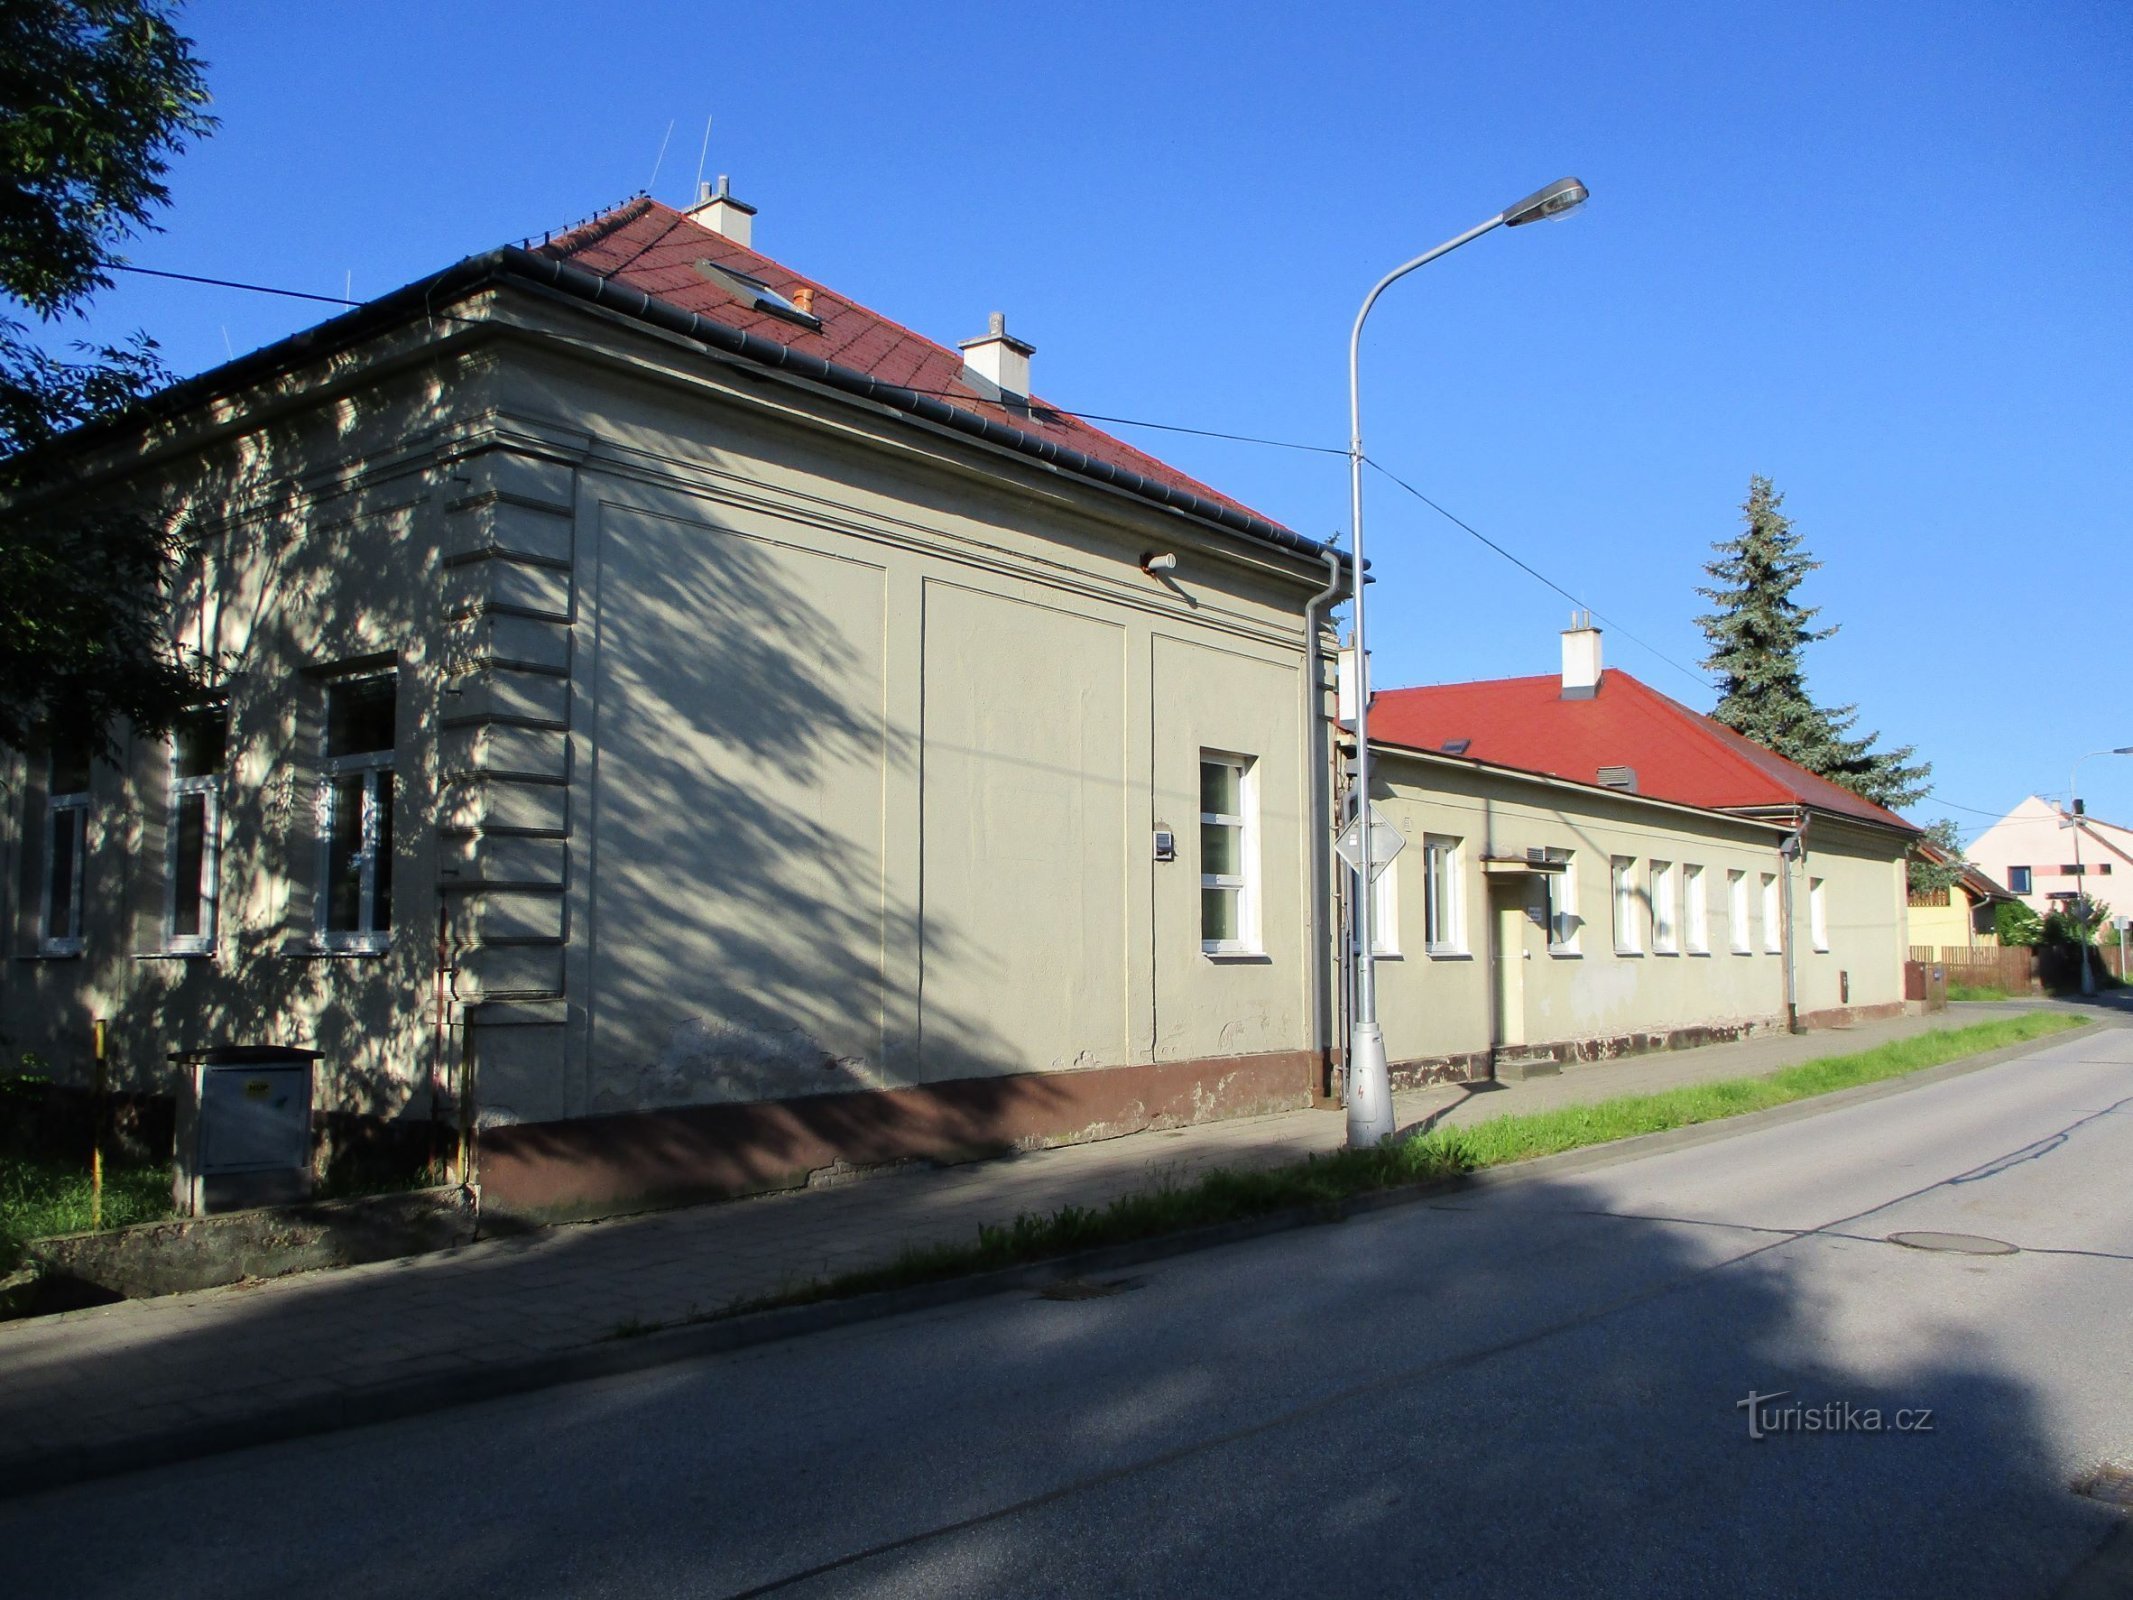 Școală din Březhrad (Hradec Králové, 9.6.2019)